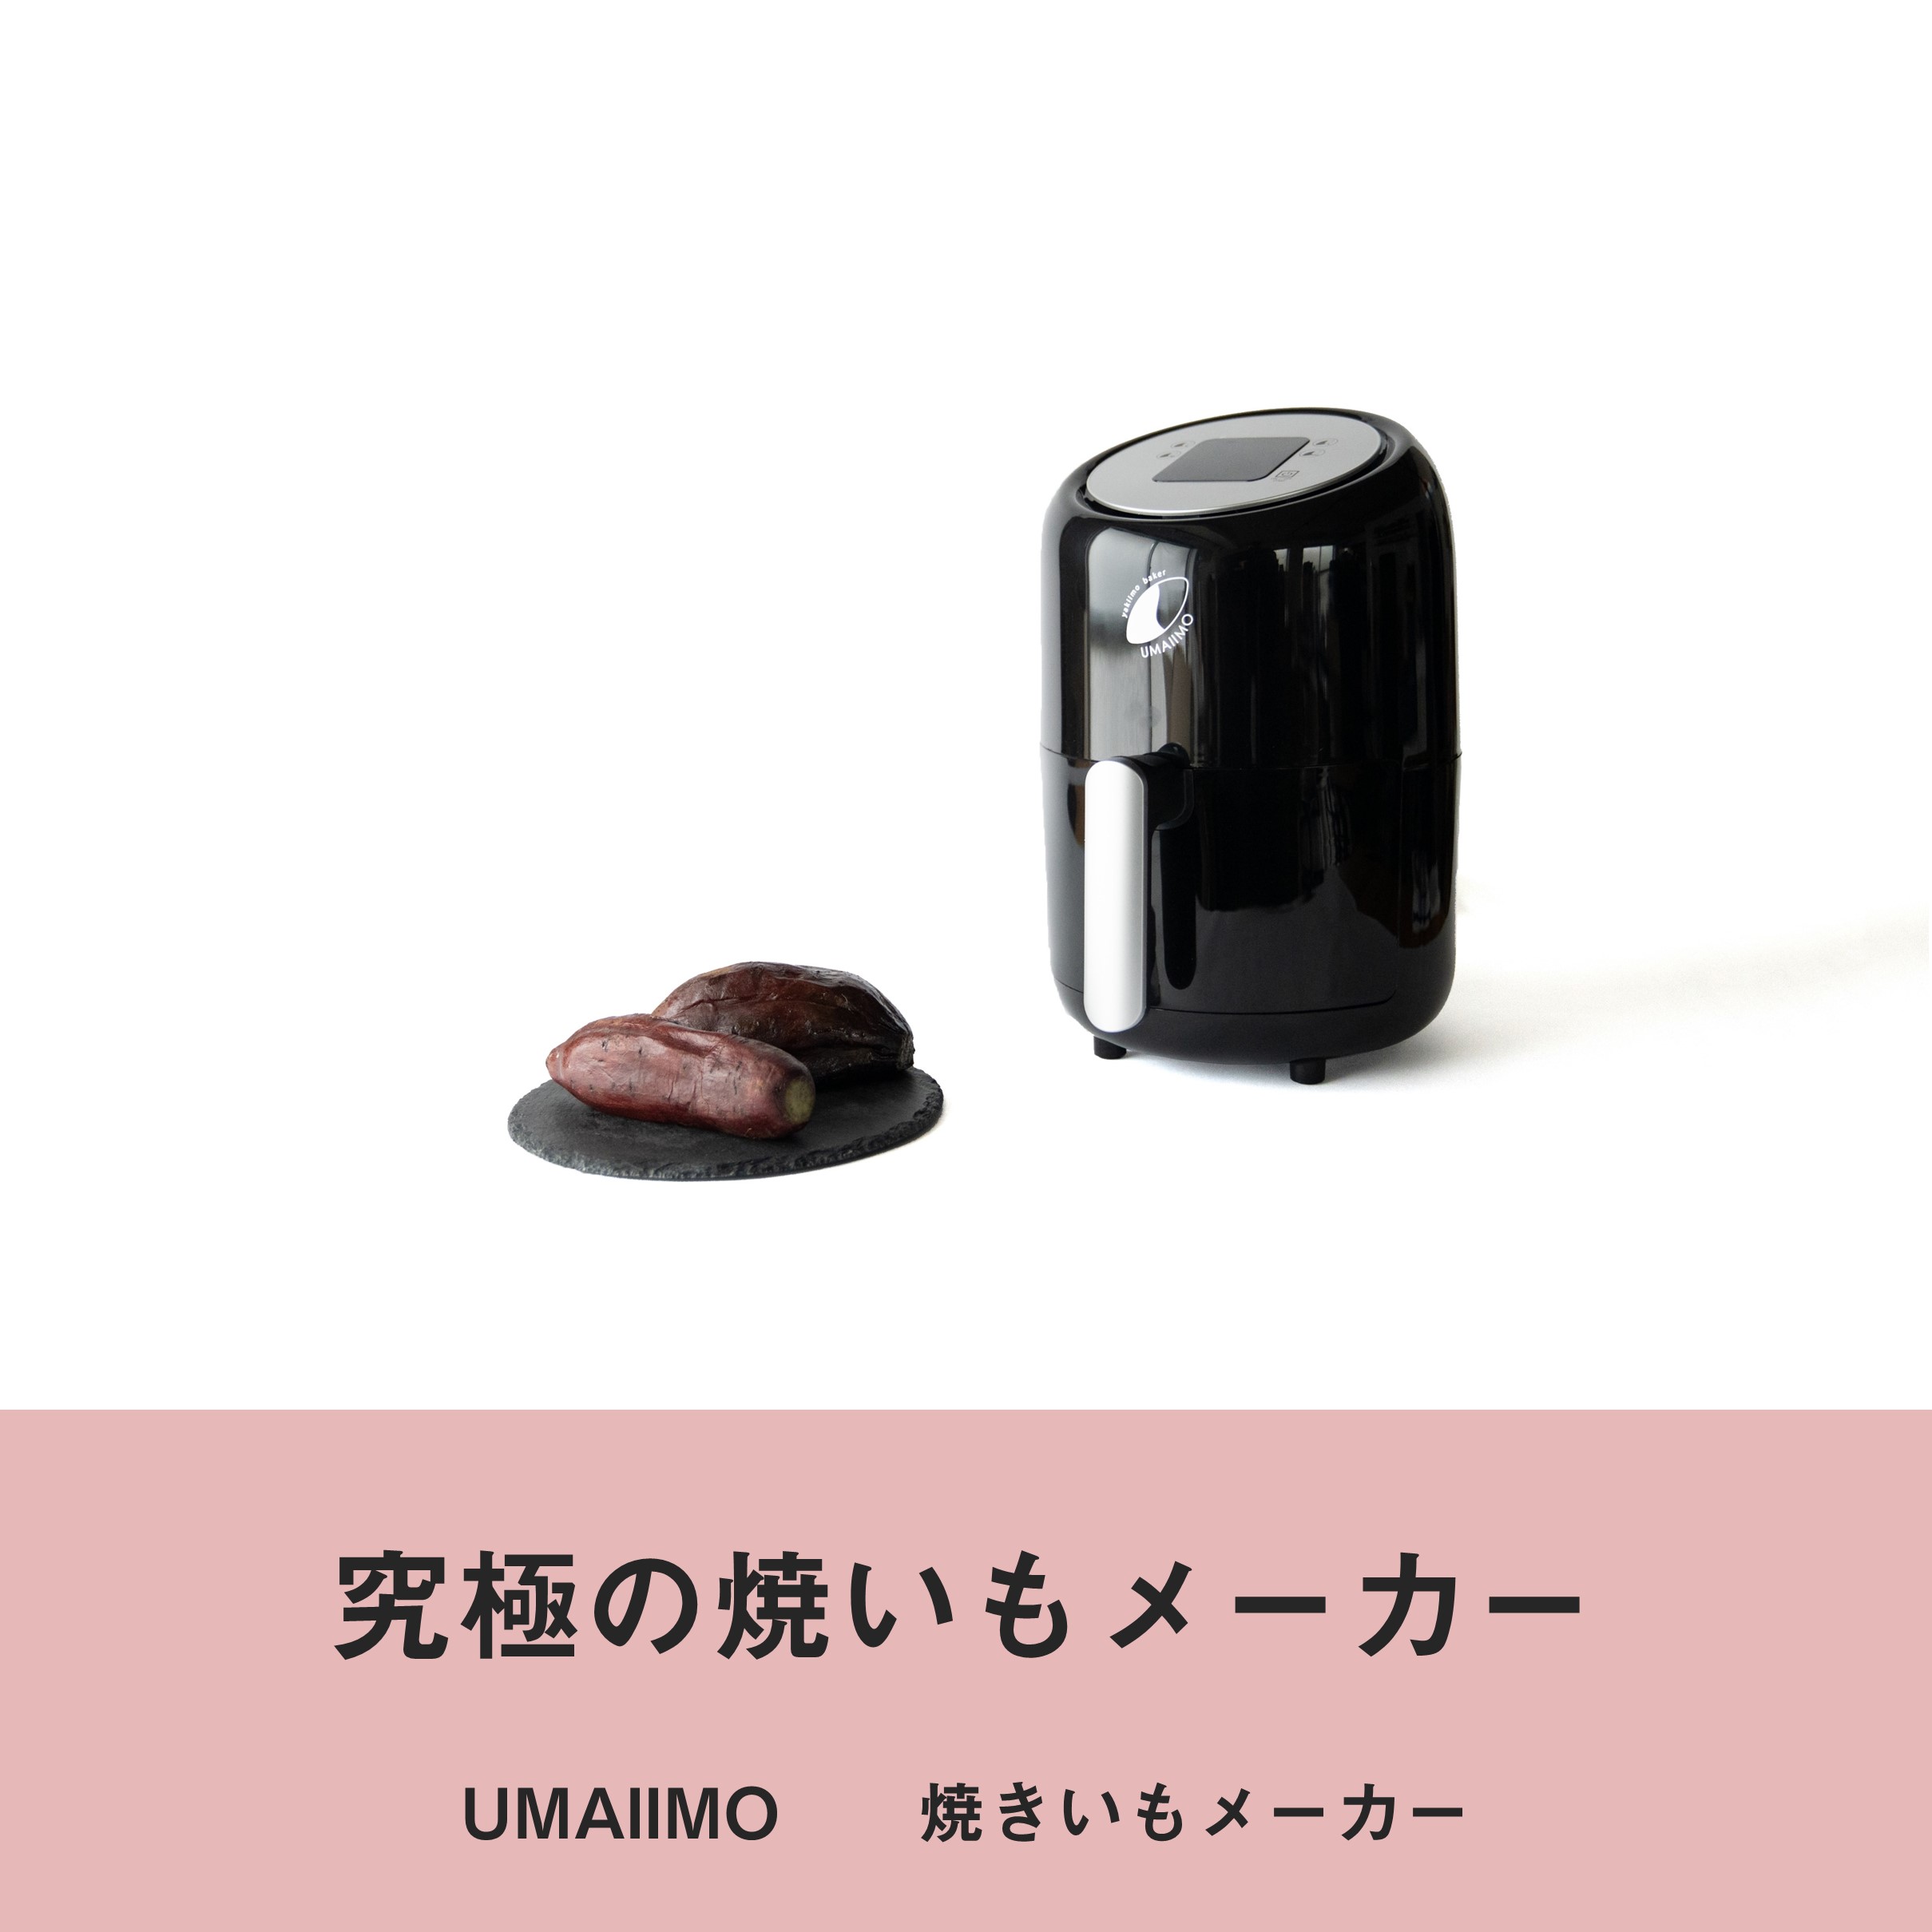 UMAIIMO / 焼いもメーカー / アーネスト株式会社